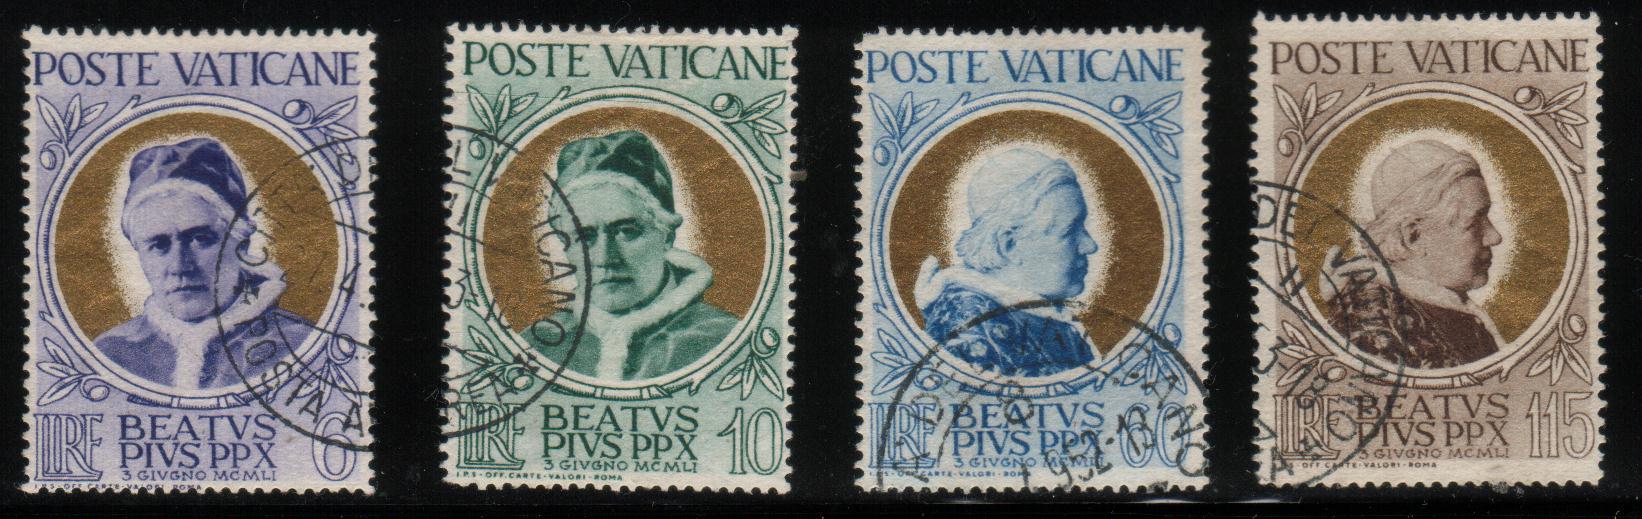 VATICAN 1951 BEATIFICATION OF POPE PIUS X SET OF 4 VFU VATICANE VATICANO SG 164 - 167 - Gebruikt